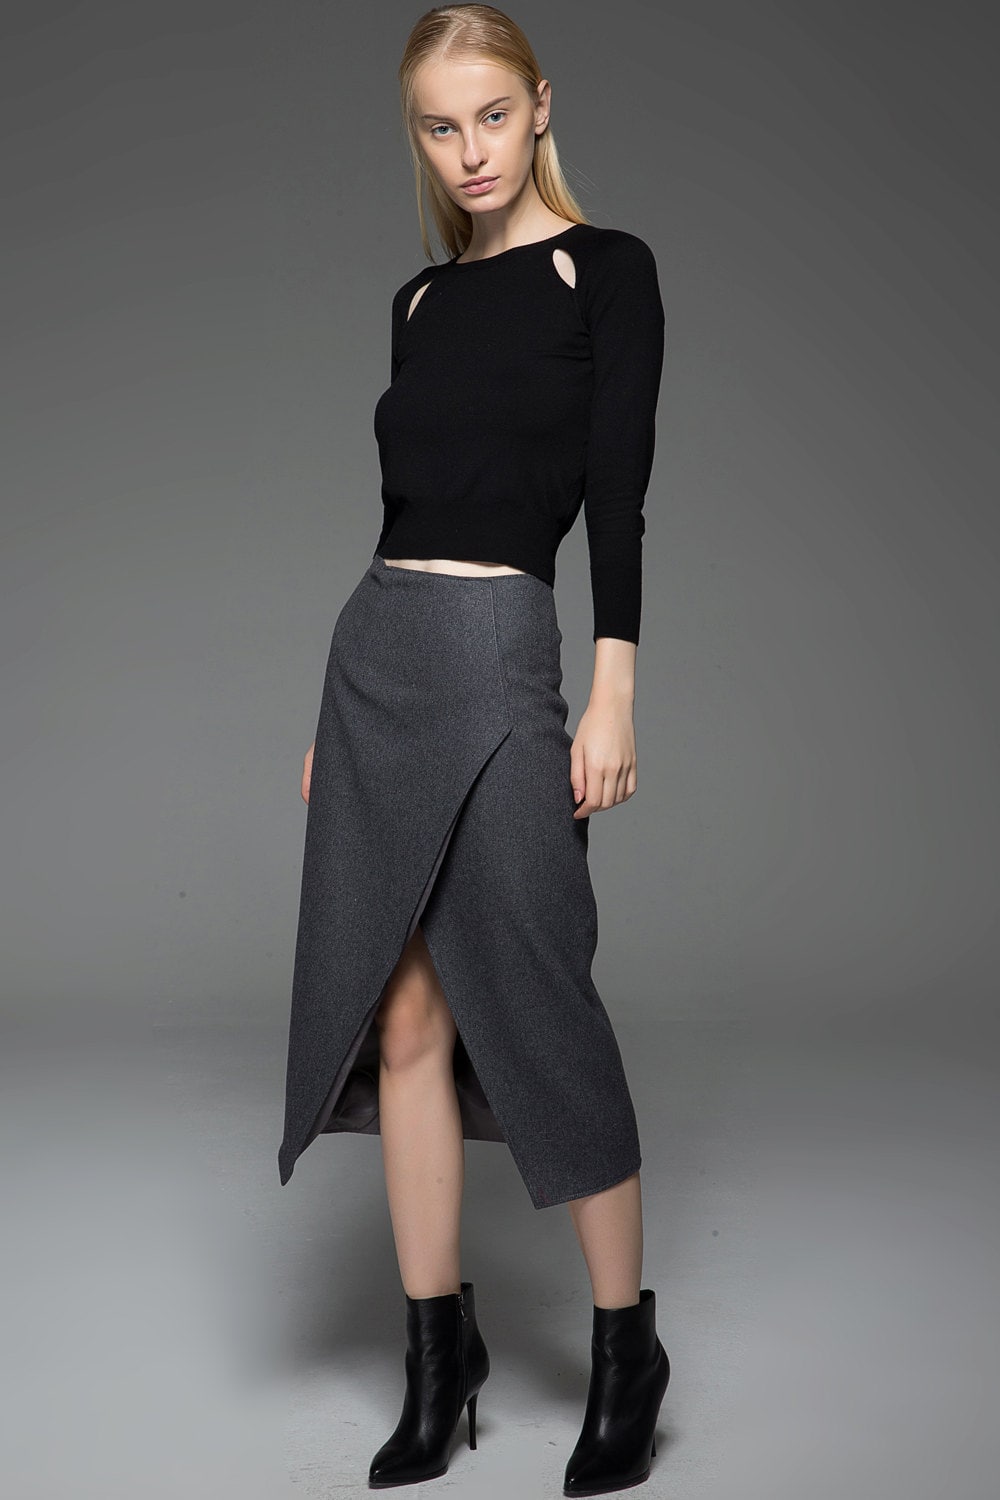 Pencil skirt wool skirt asymmetrical skirt winter skirt | Etsy